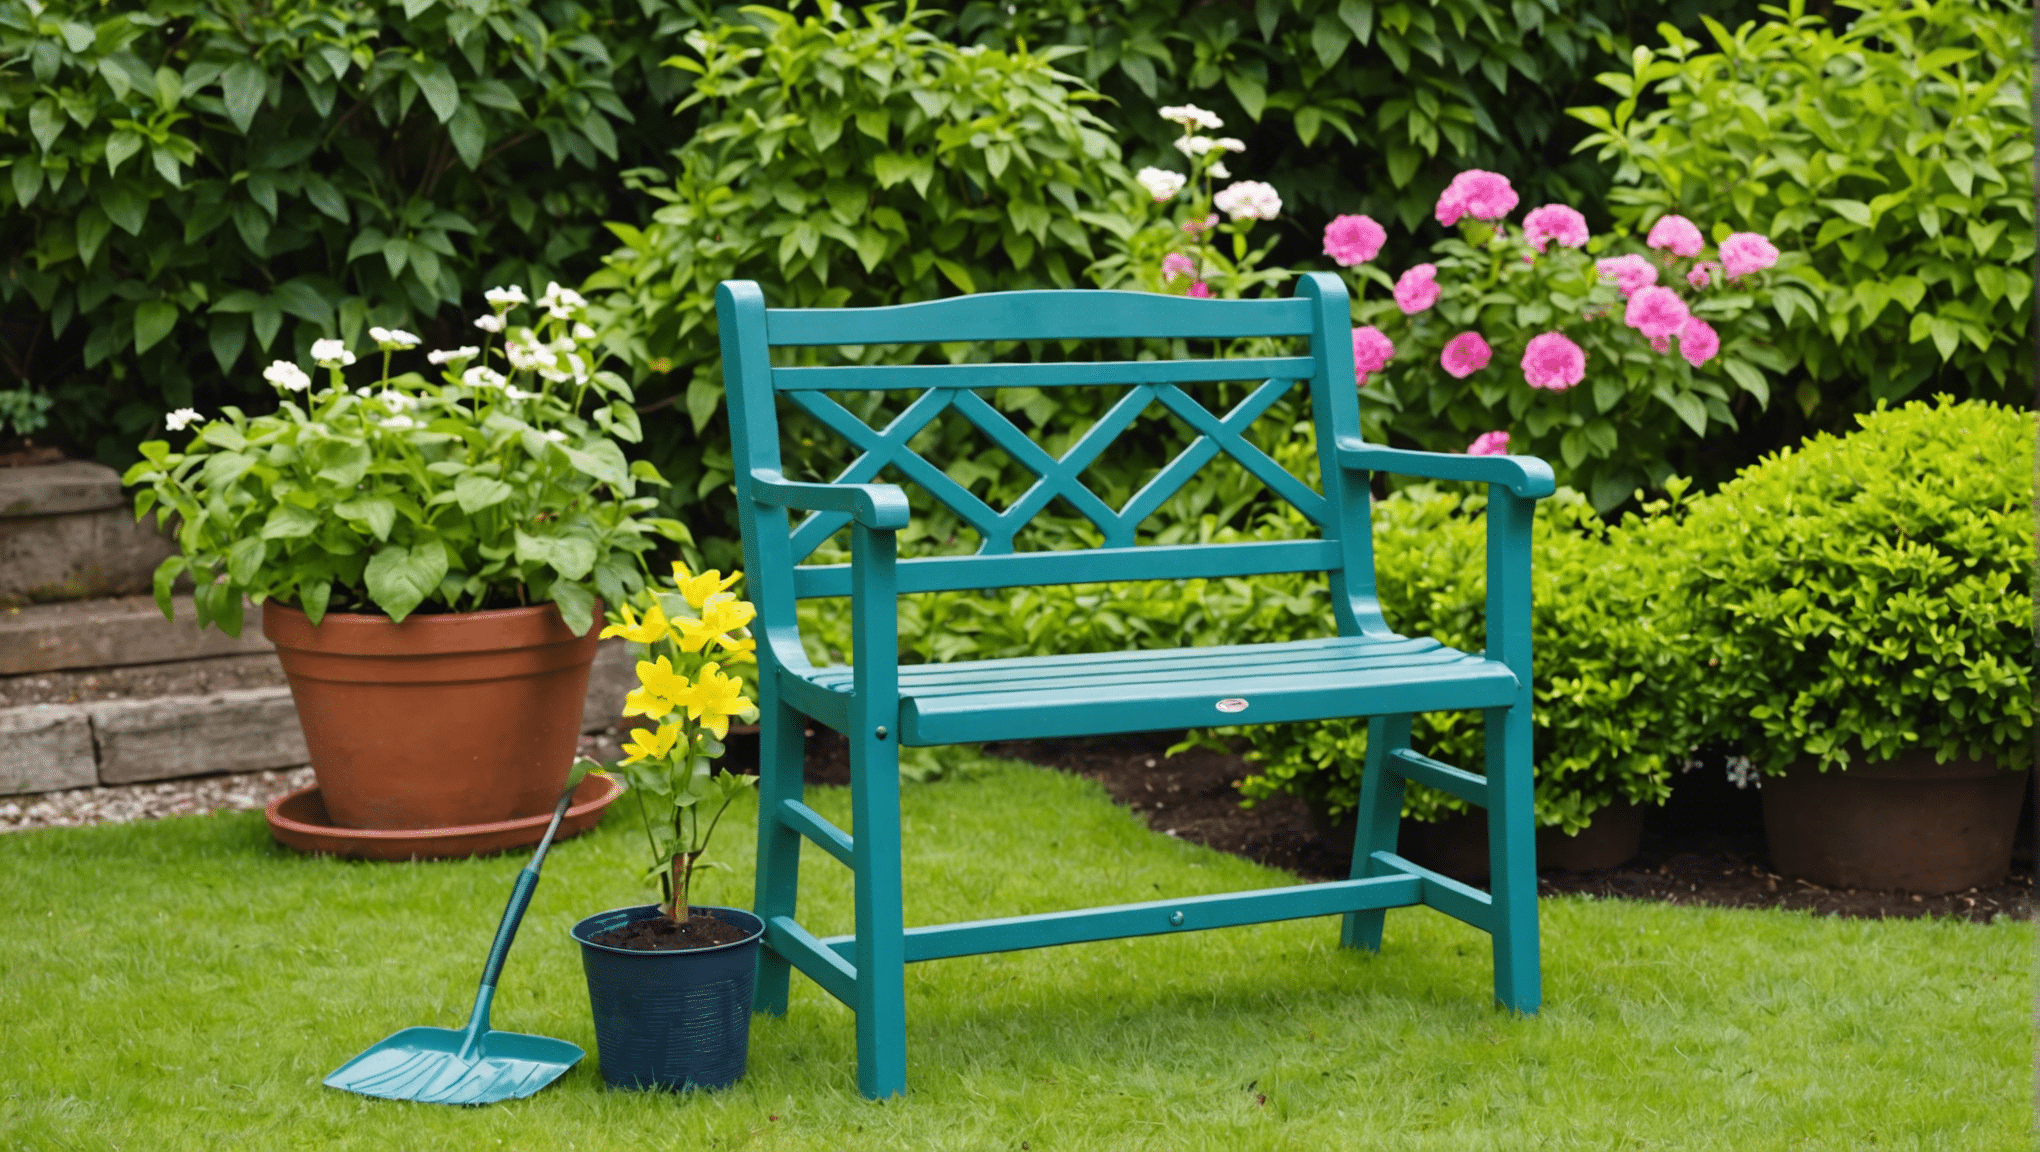 Descubra los beneficios de utilizar un asiento de jardín y cómo puede mejorar su experiencia de jardinería. ¡Salva tu espalda y tus rodillas mientras disfrutas de tu tiempo en el jardín!